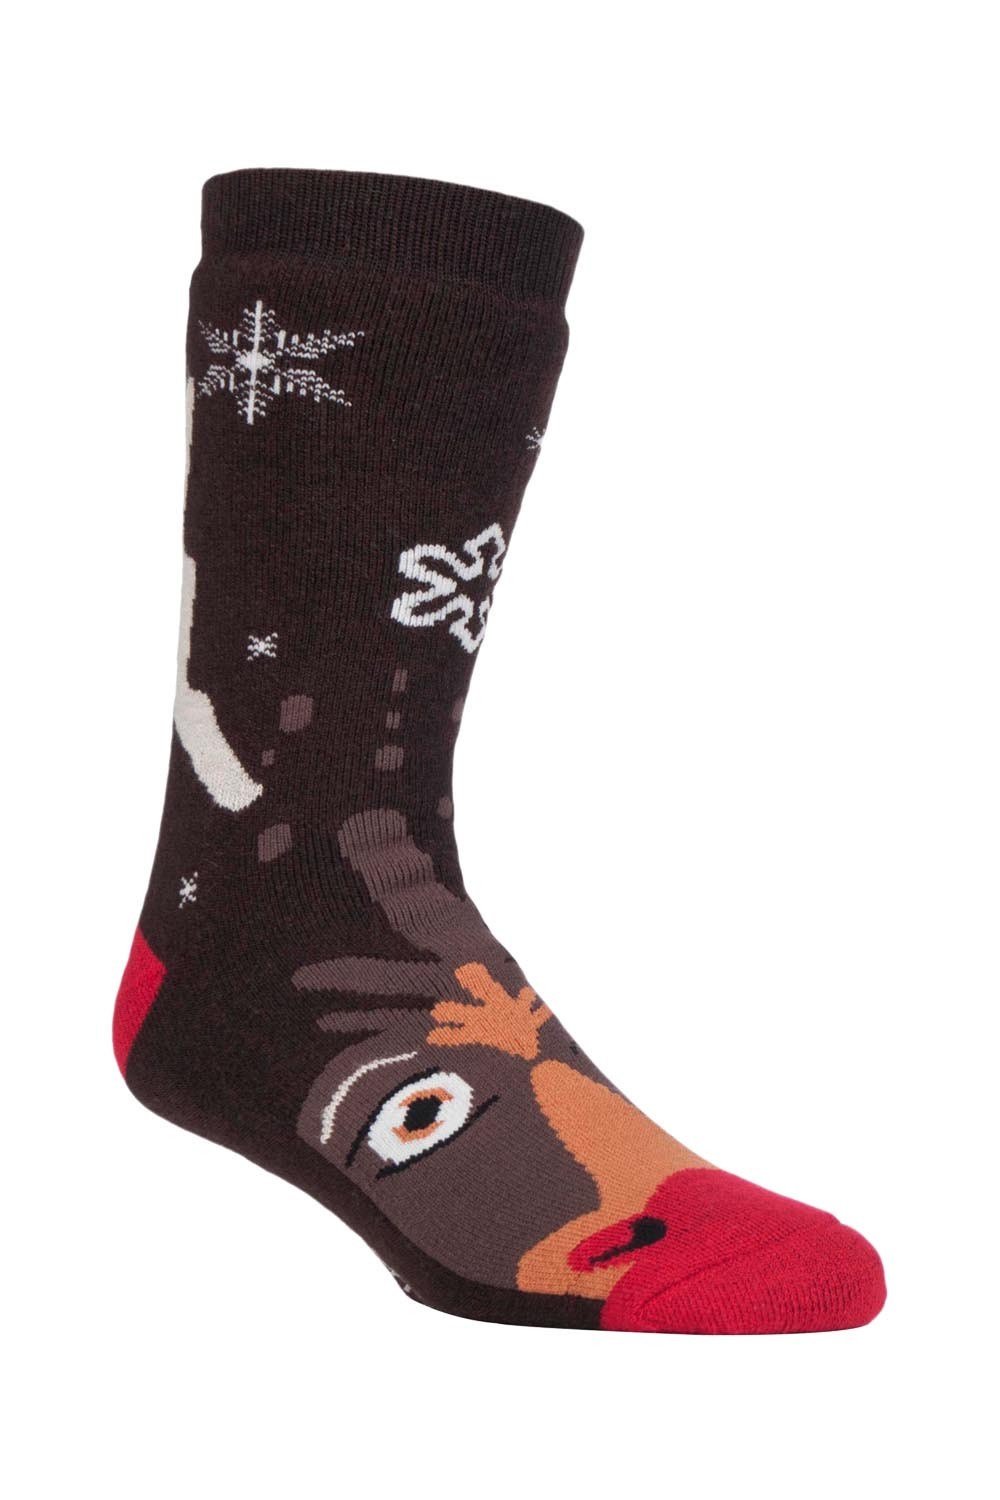 Mens Christmas Non Slip Thermal Slipper Socks -